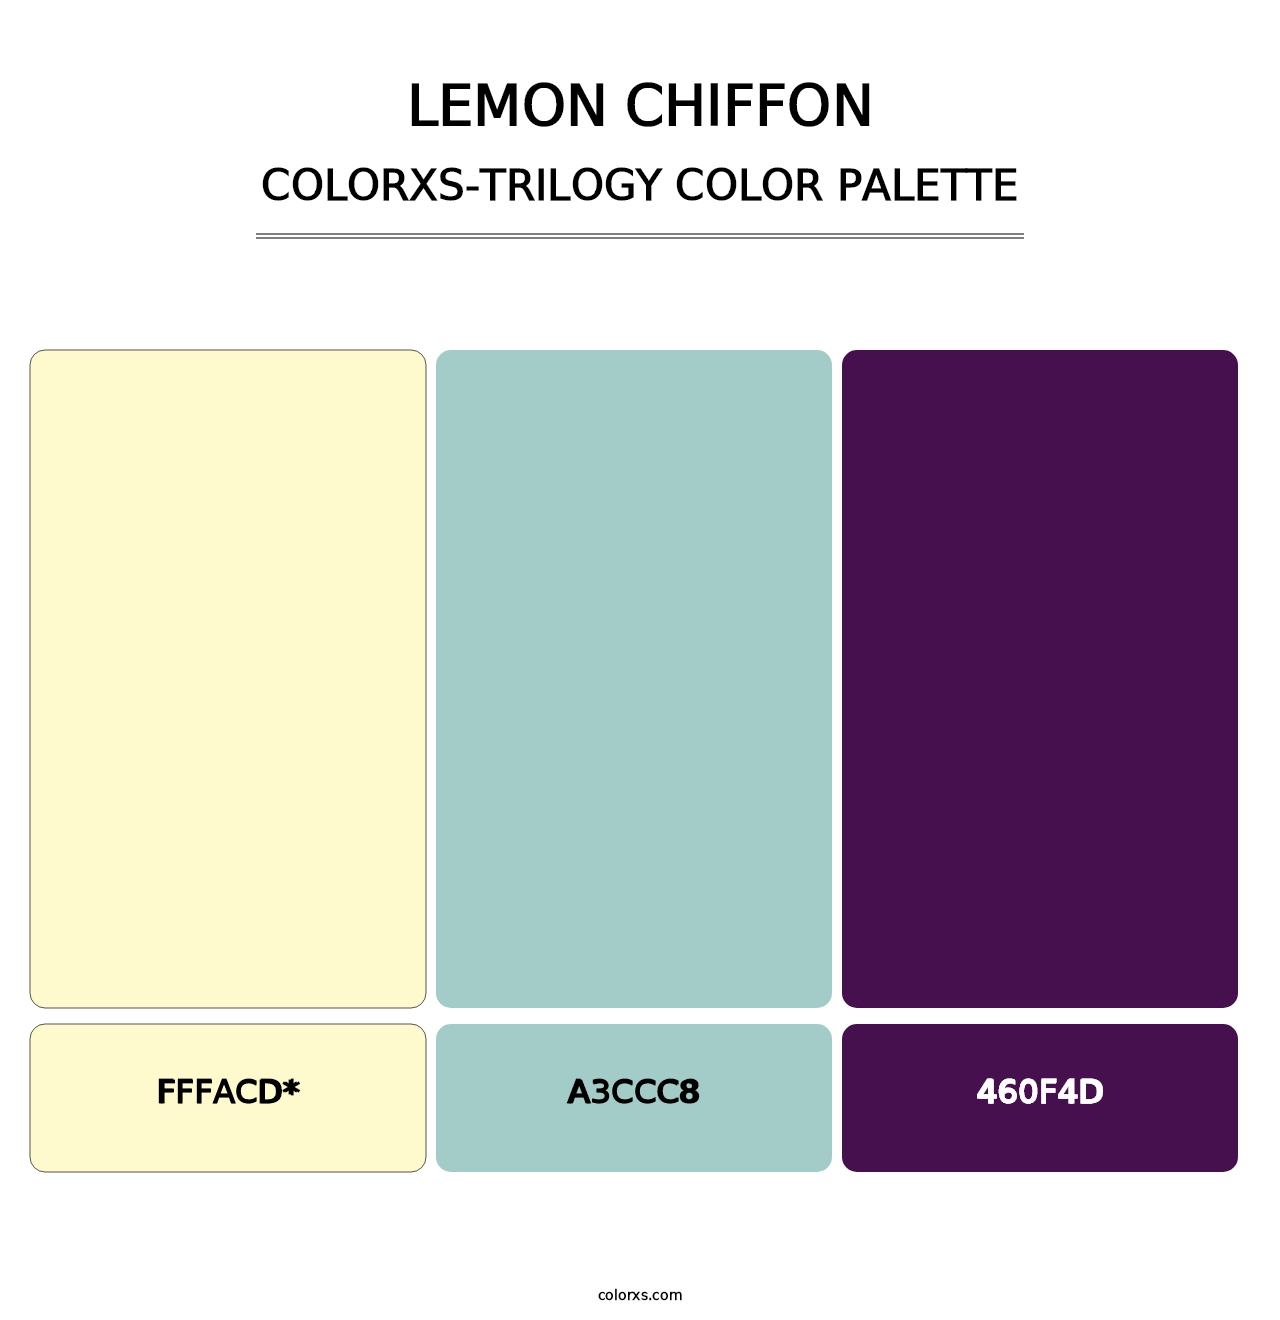 Lemon Chiffon - Colorxs Trilogy Palette